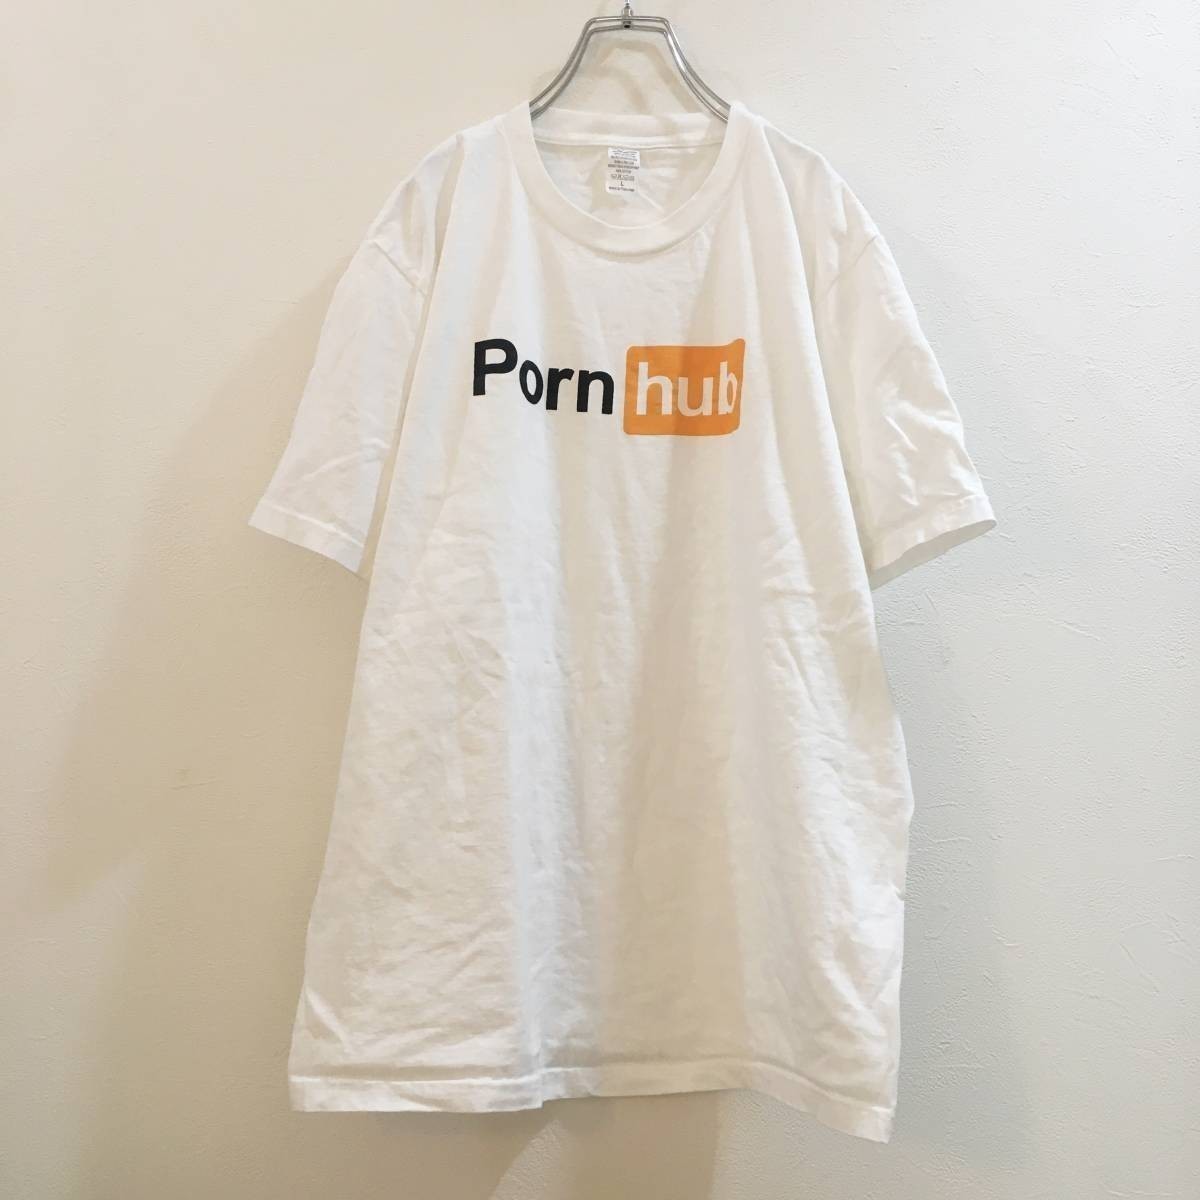 ◆大きいサイズ◆L◆お洒落な逸品◆ 半袖 Tシャツ Porn hub ホワイト 白 メンズ L ON2144_画像1